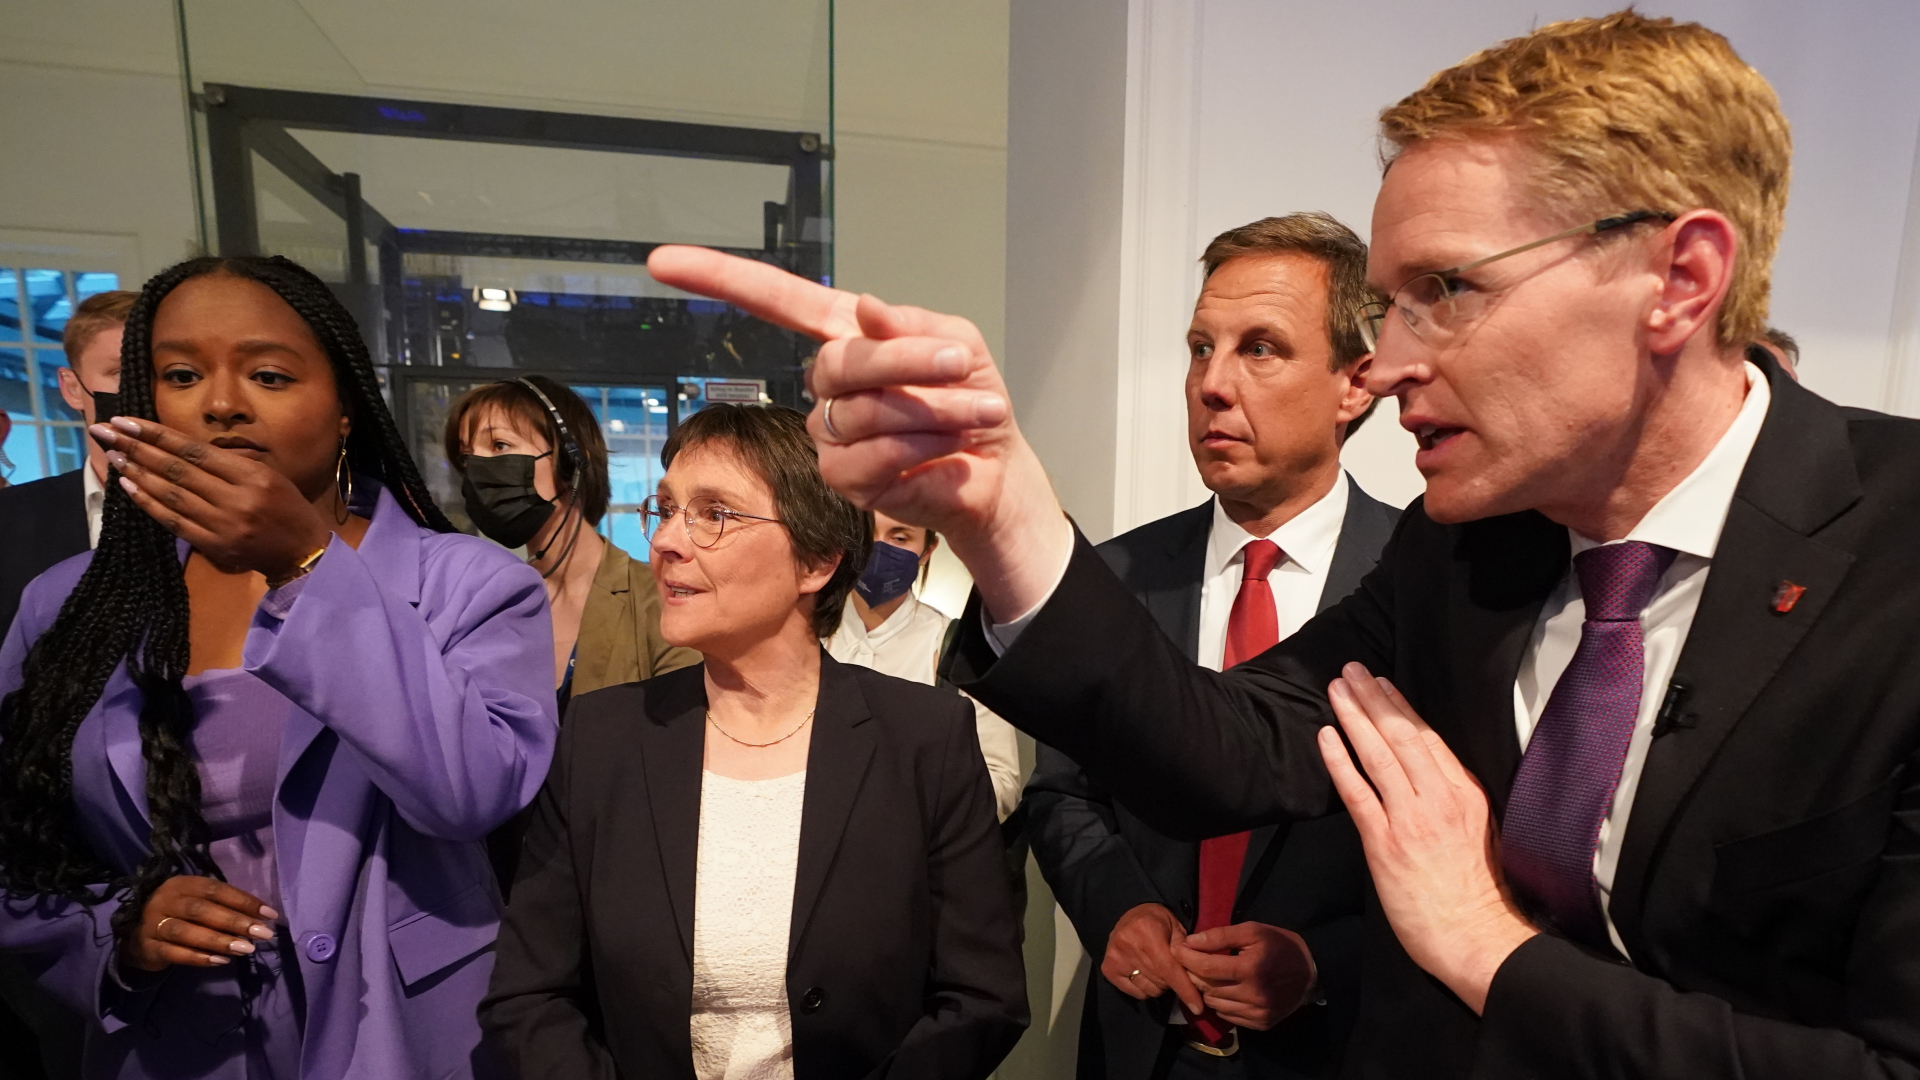 Wahlsieger Günther zeigt mit dem Finger Richtung Fernsehstudio